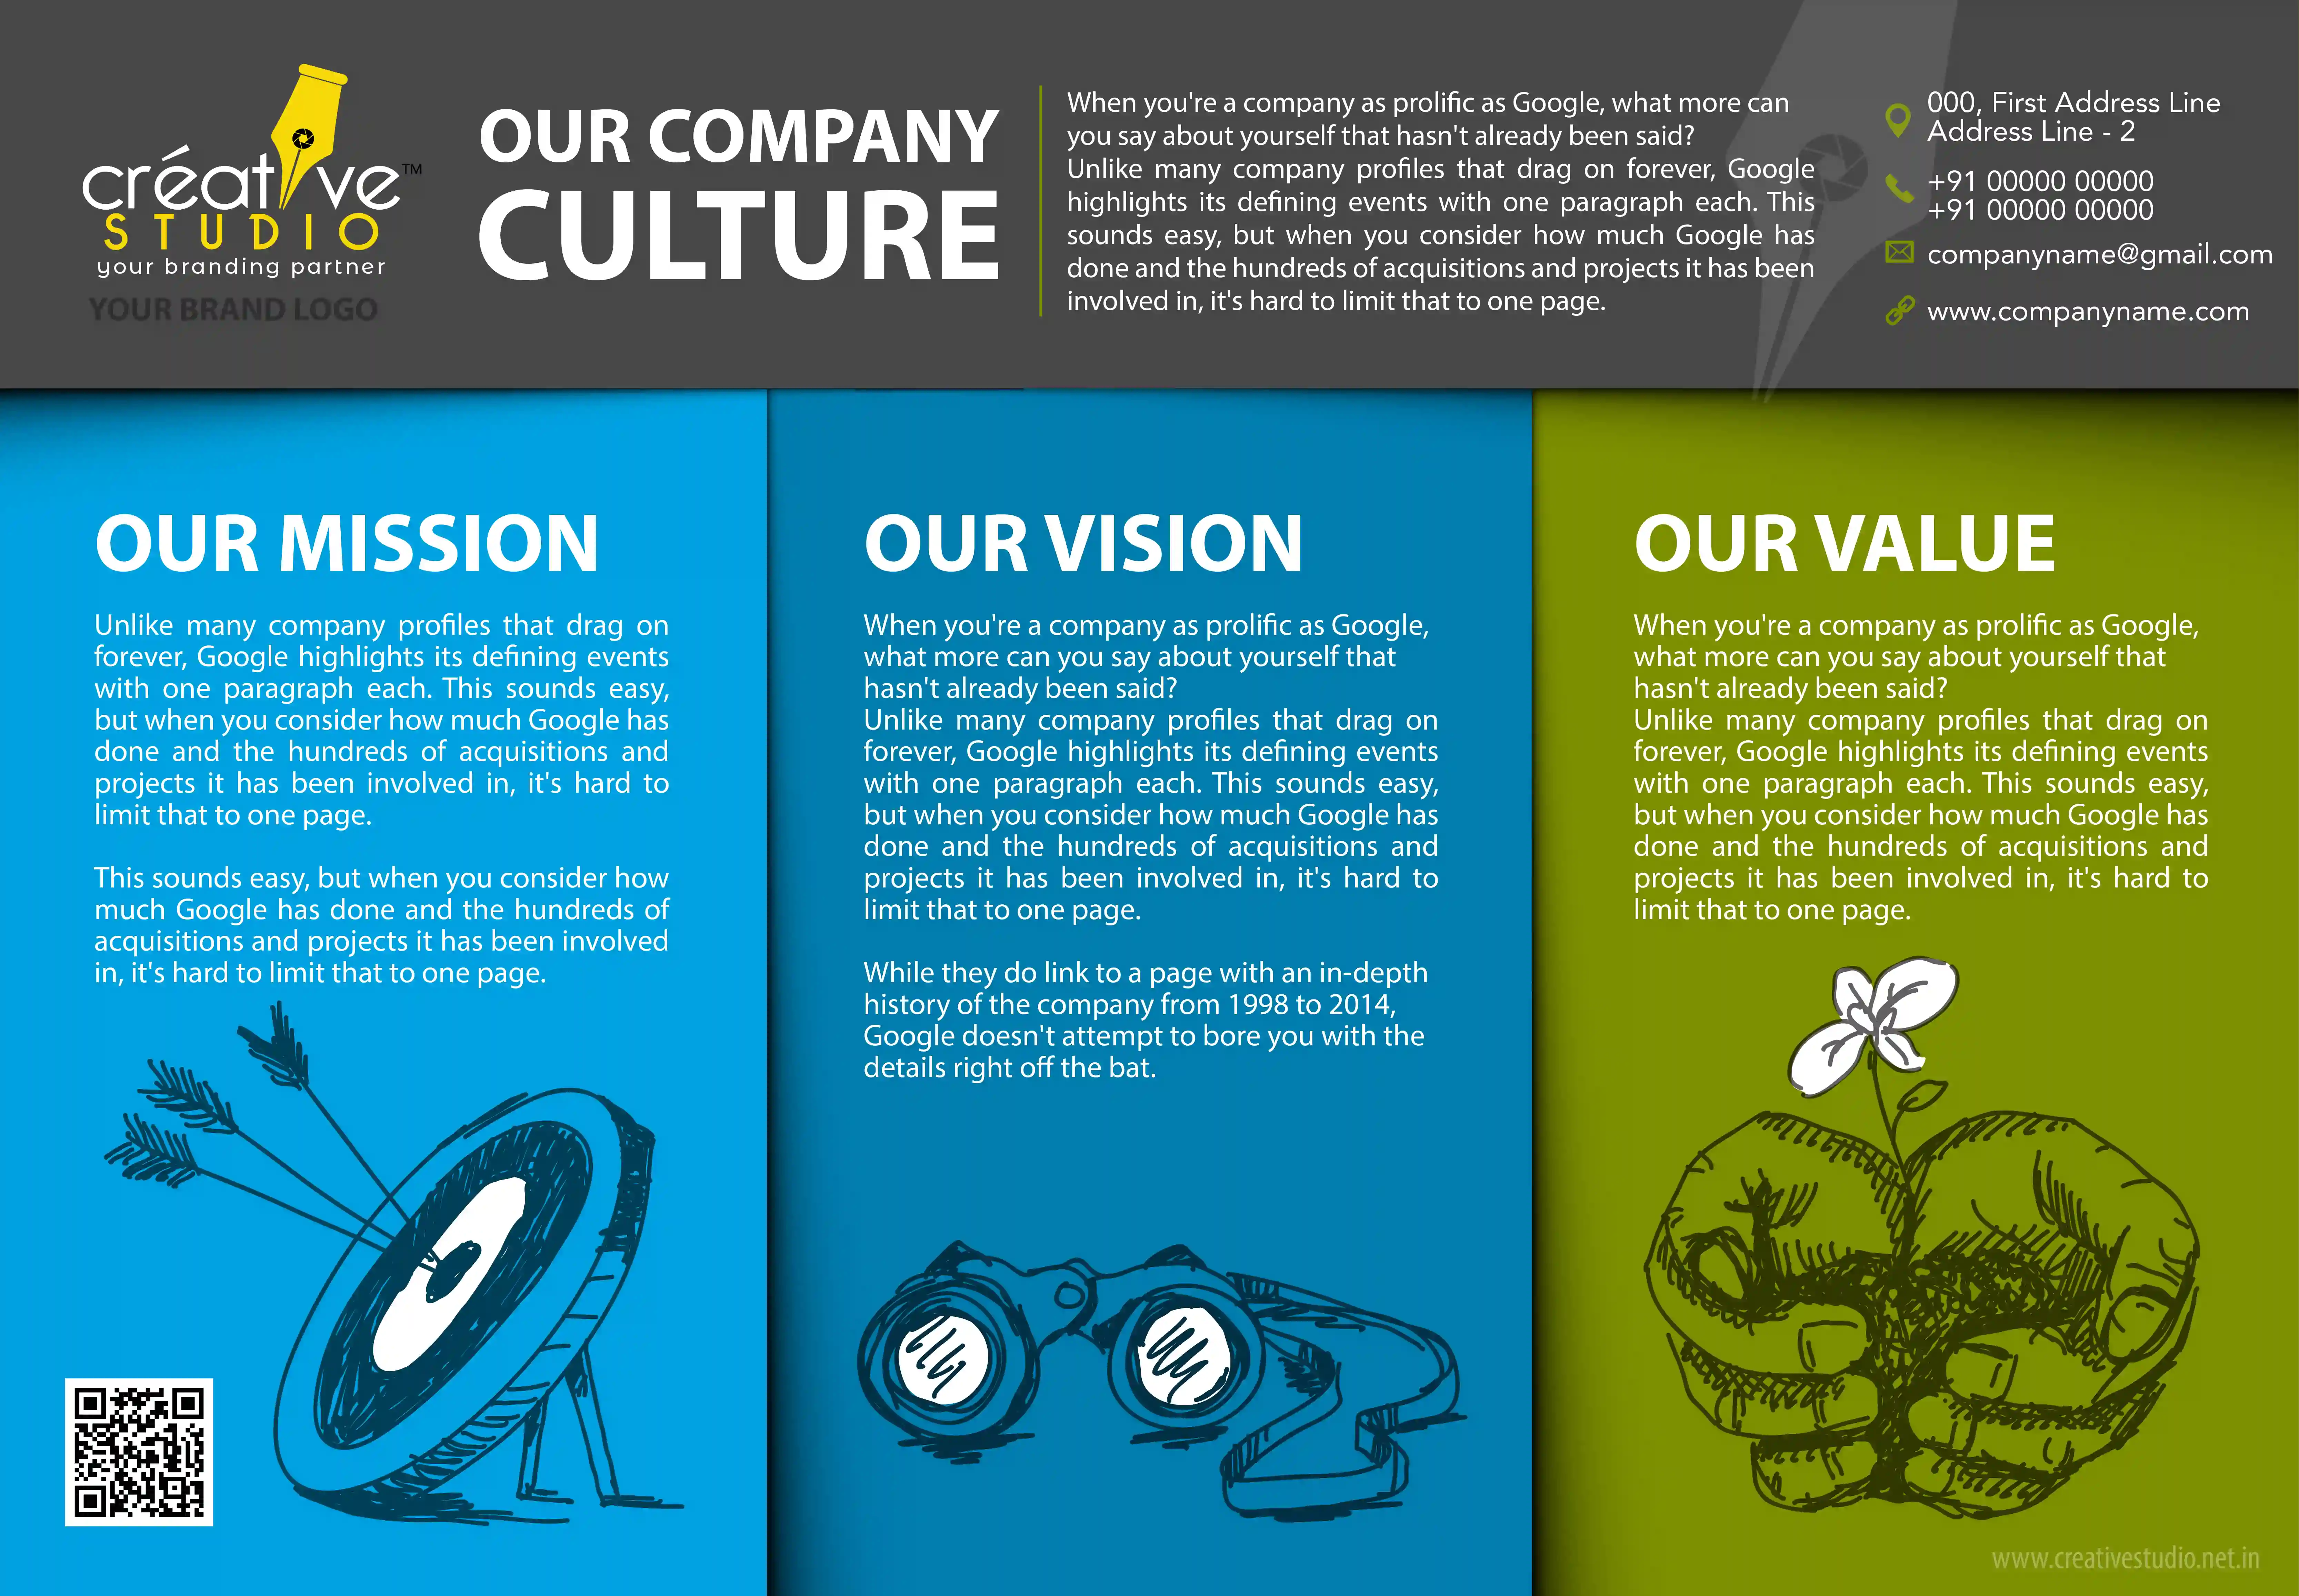 COMPANY PROFILE 01 01 - Company Profile Portfolio by Creative Studio